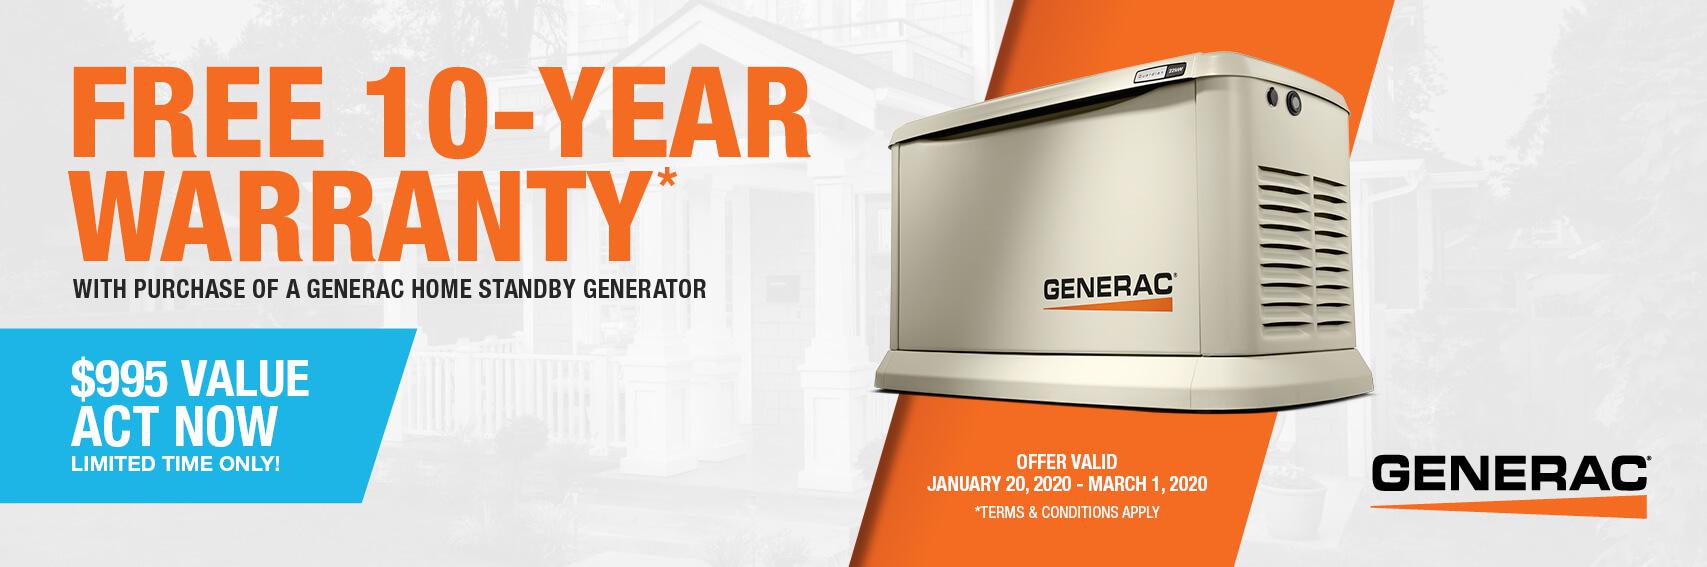 Homestandby Generator Deal | Warranty Offer | Generac Dealer | East Longmeadow, MA